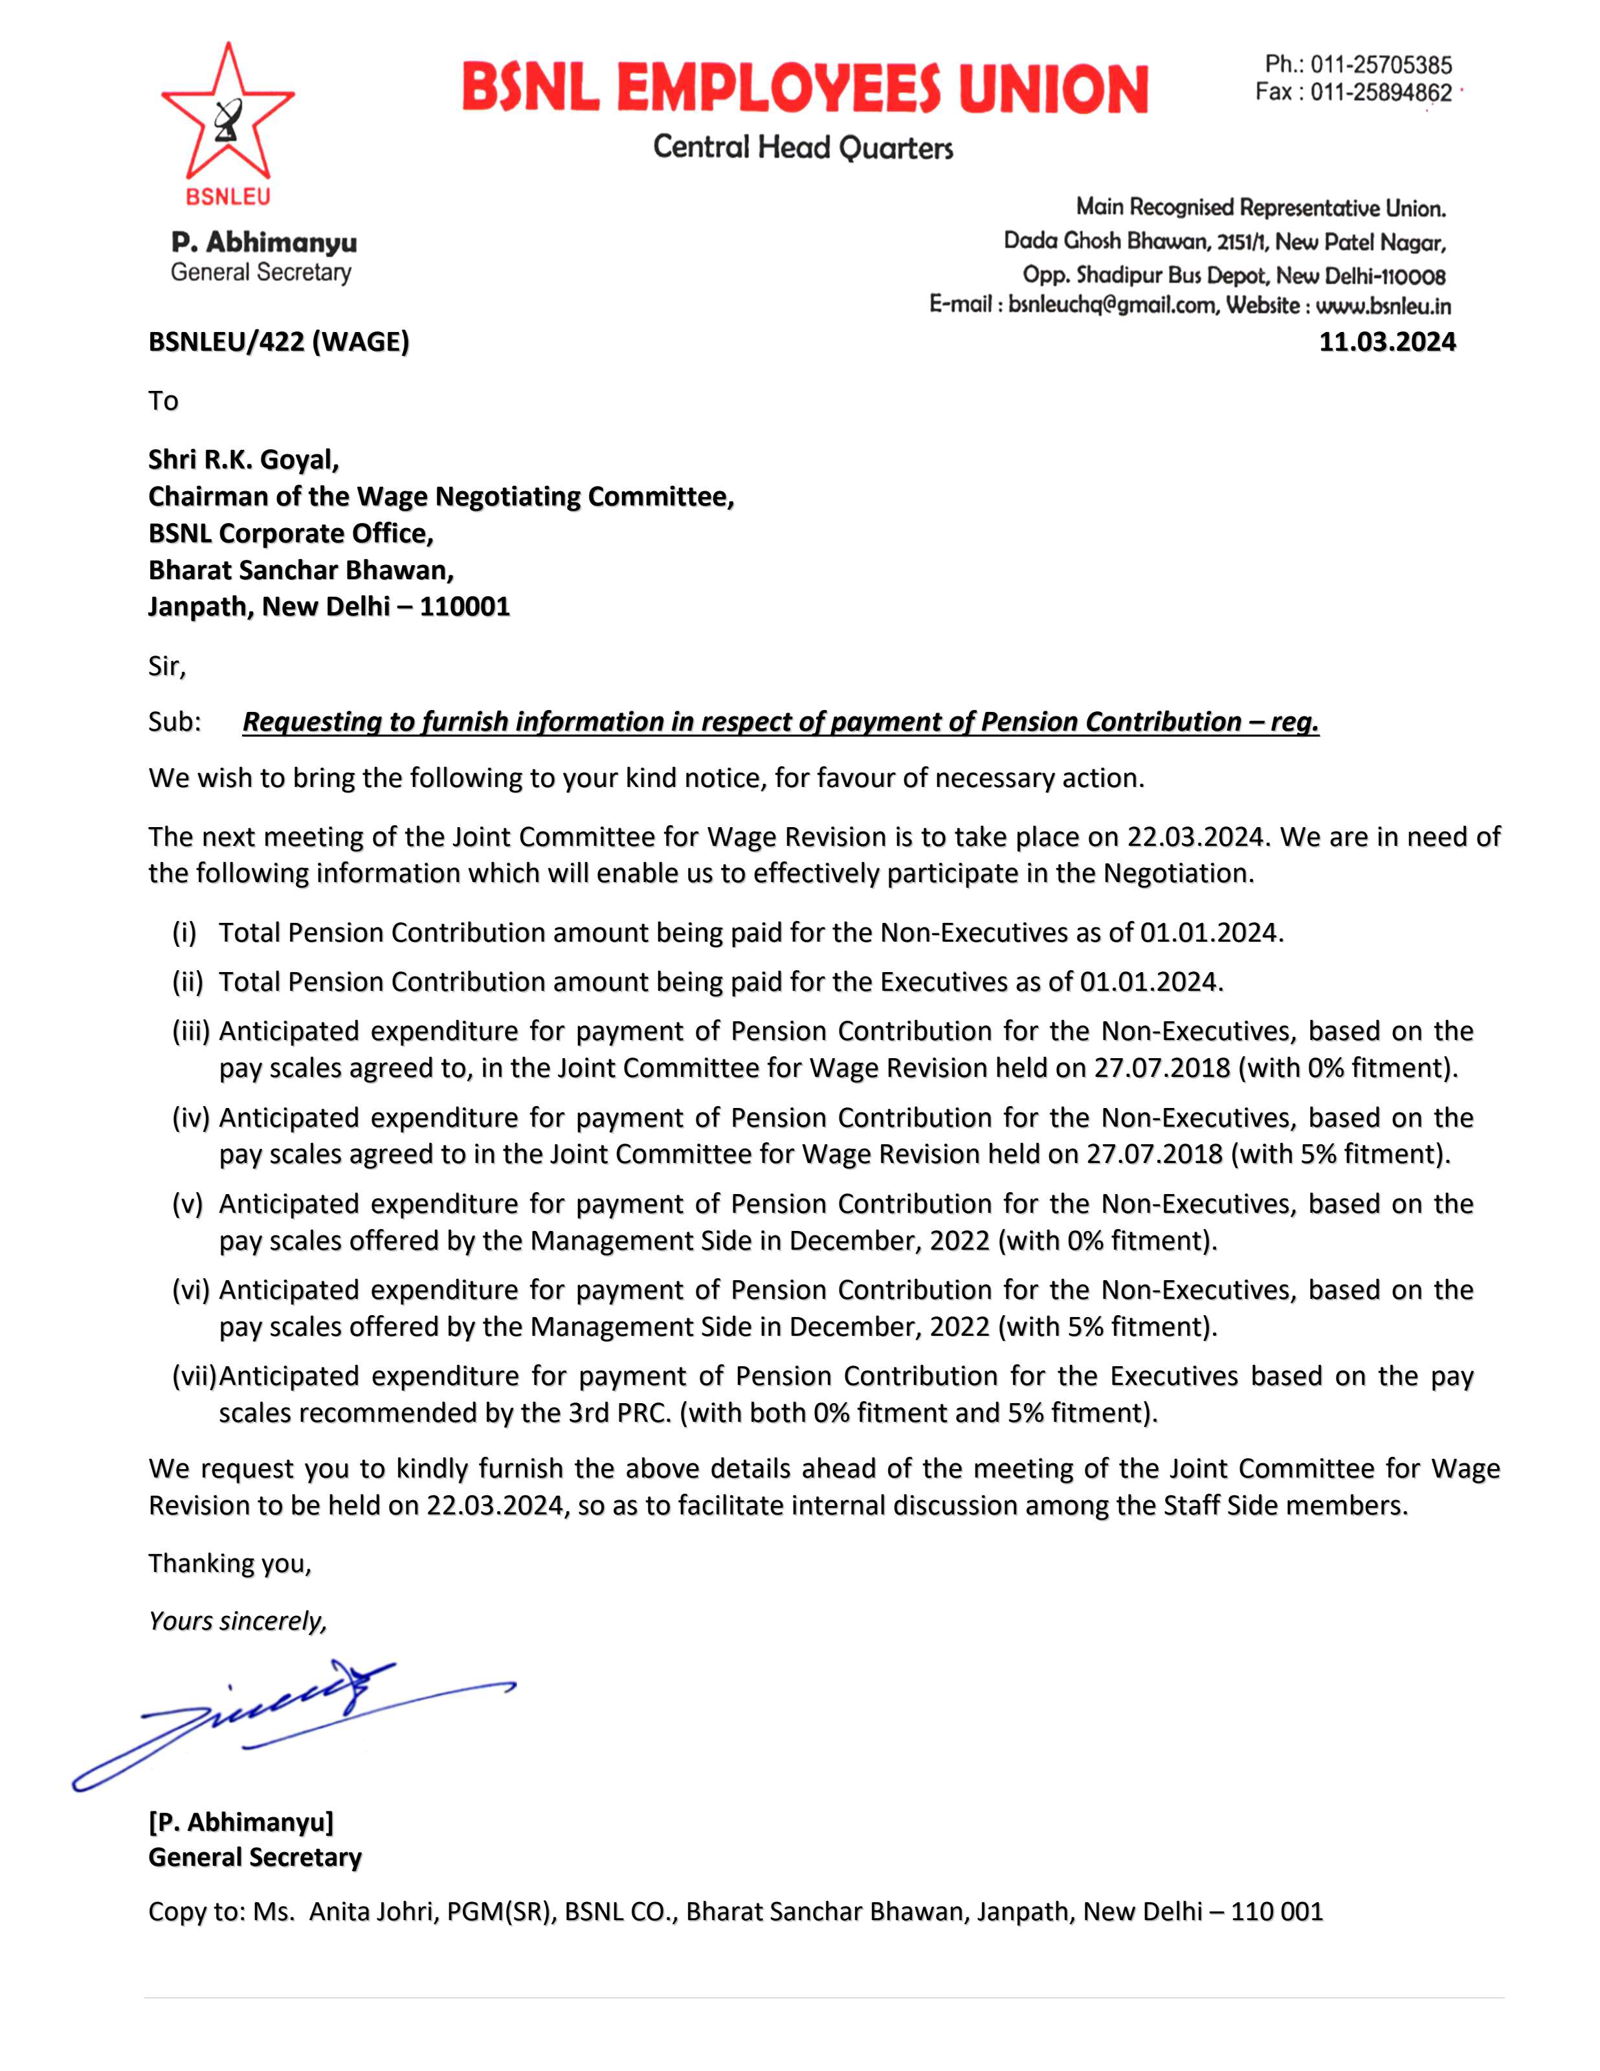 वेतन रिविजन - *BSNLEU समिती अध्यक्षांना पत्र लिहिले, पेन्शन योगदान संबंधित माहिती सादर करण्याची मागणी. Image 